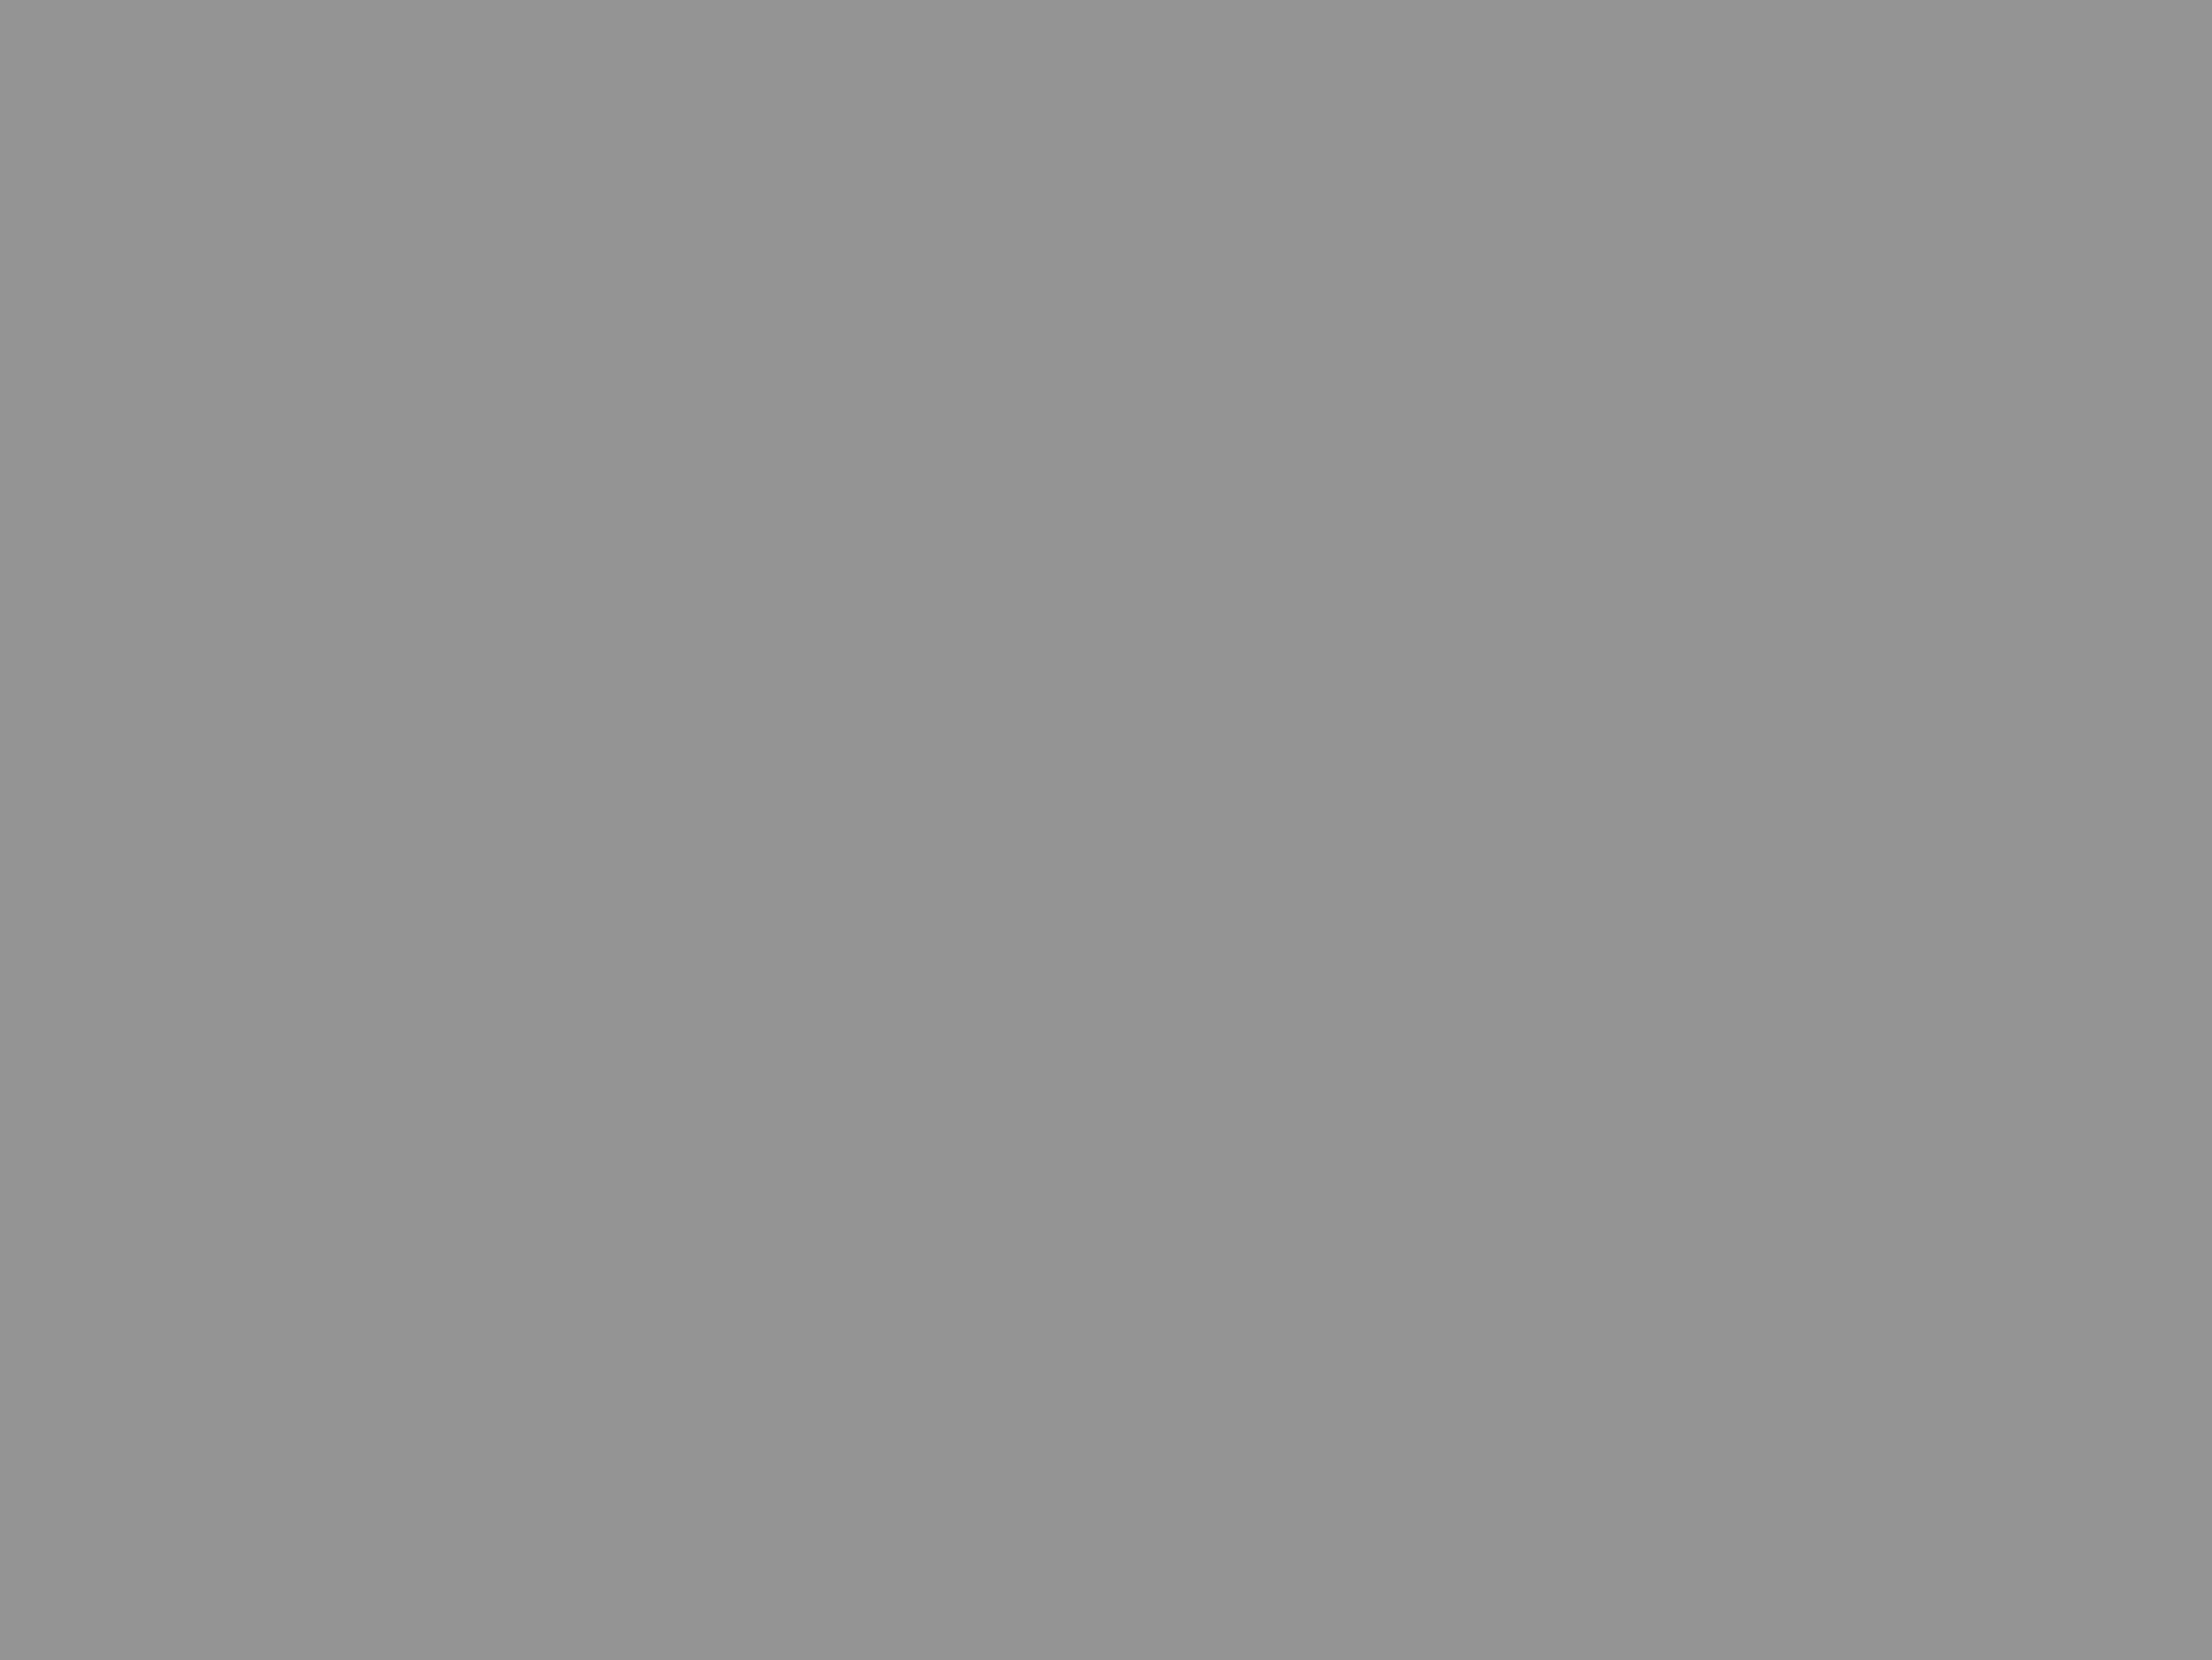 Максим Горький. 1898 год. Фотография: Репродукция ТАСС